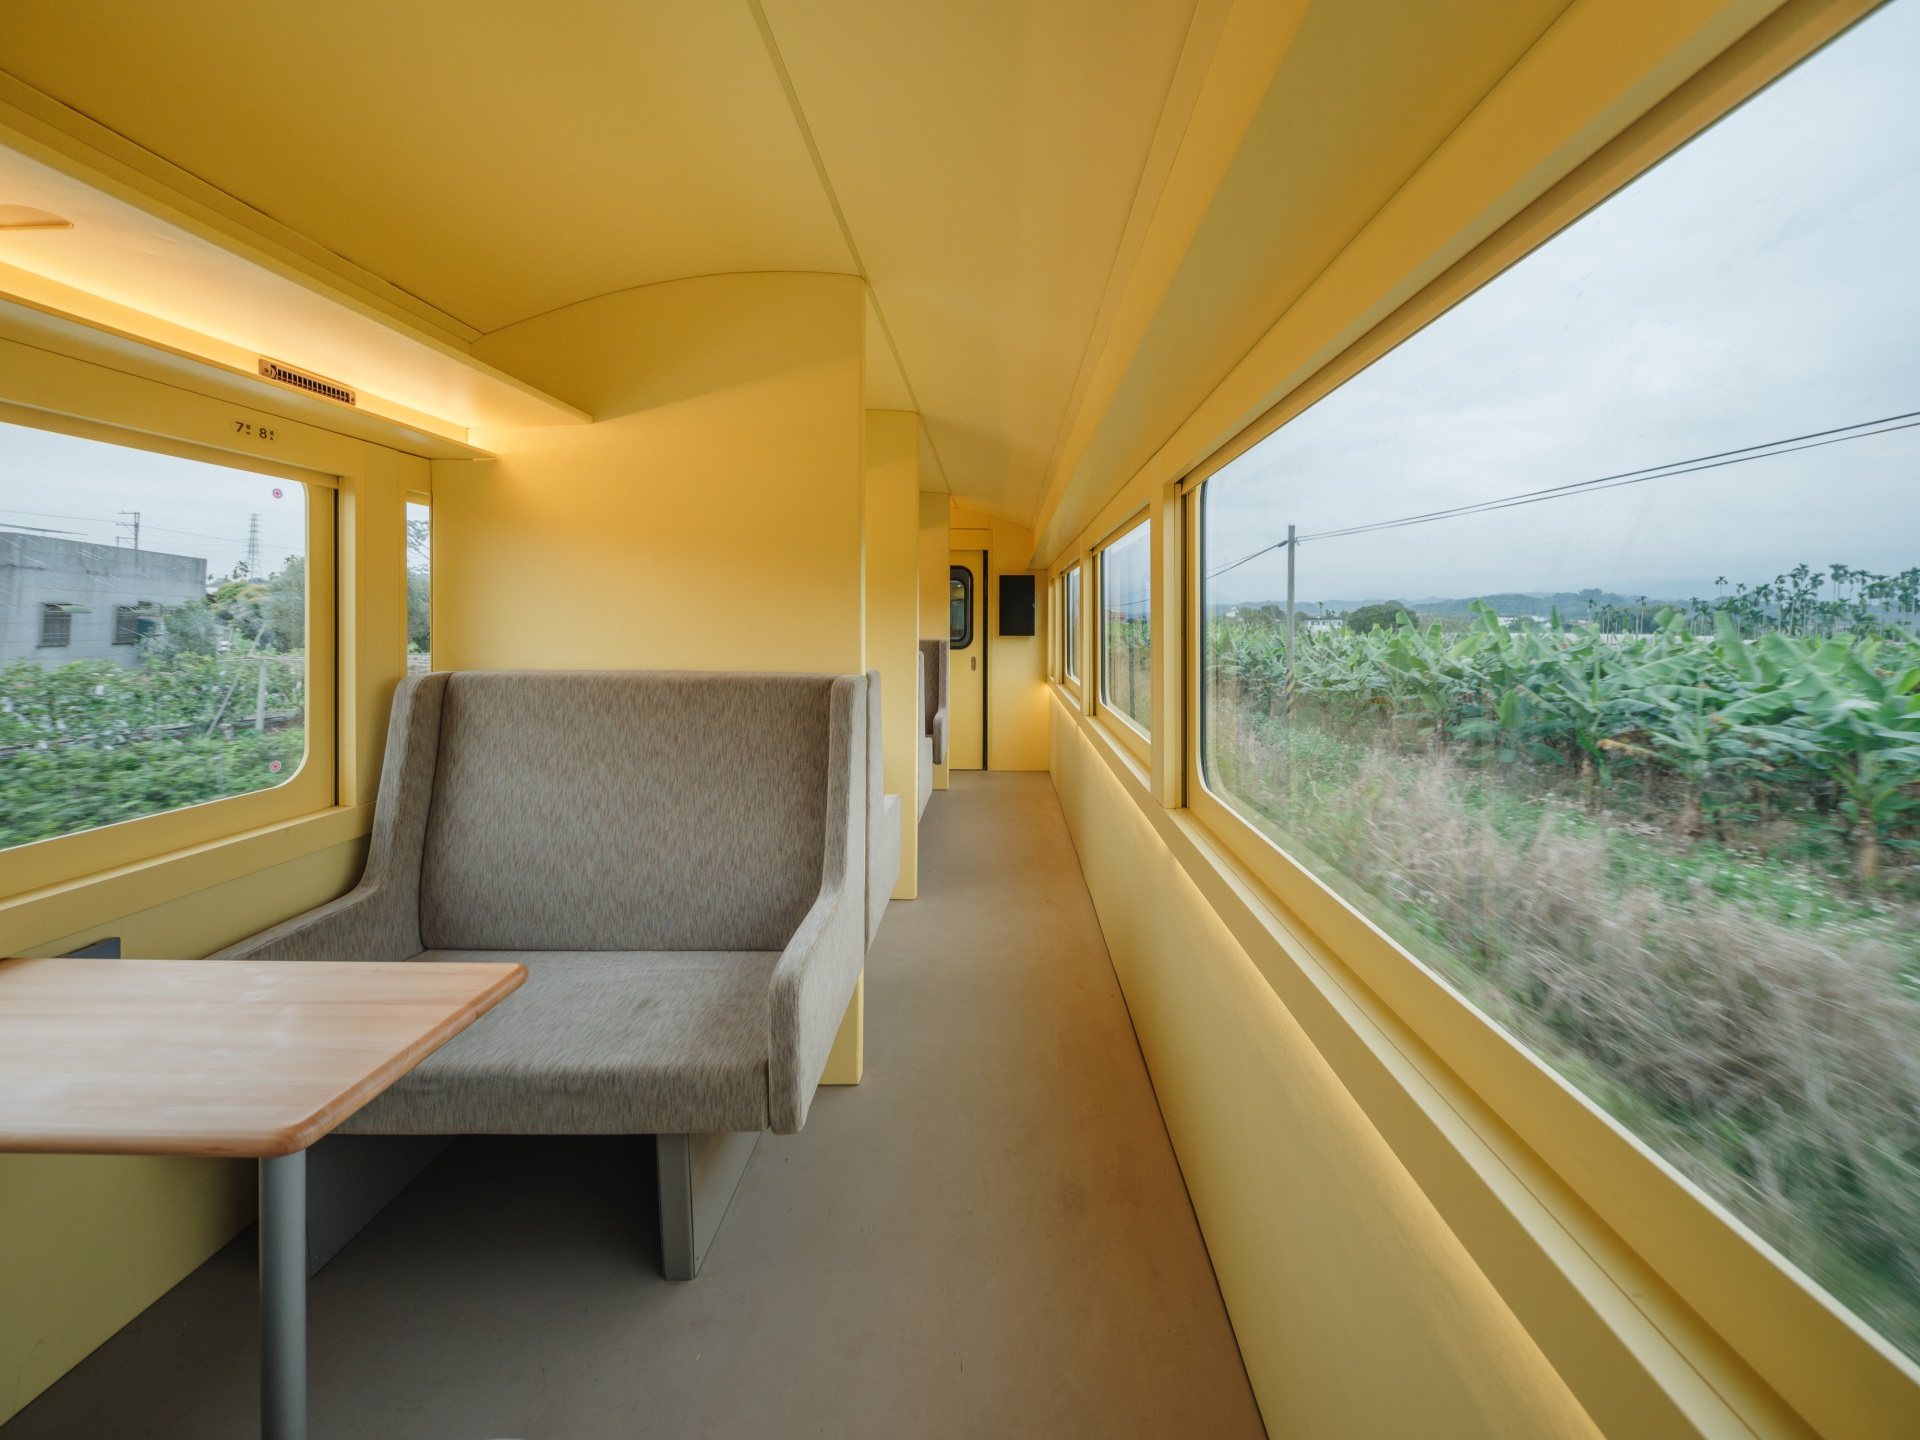 「栩悅號」的包廂席可享有半隱私空間。圖片來源：築點設計股份有限公司